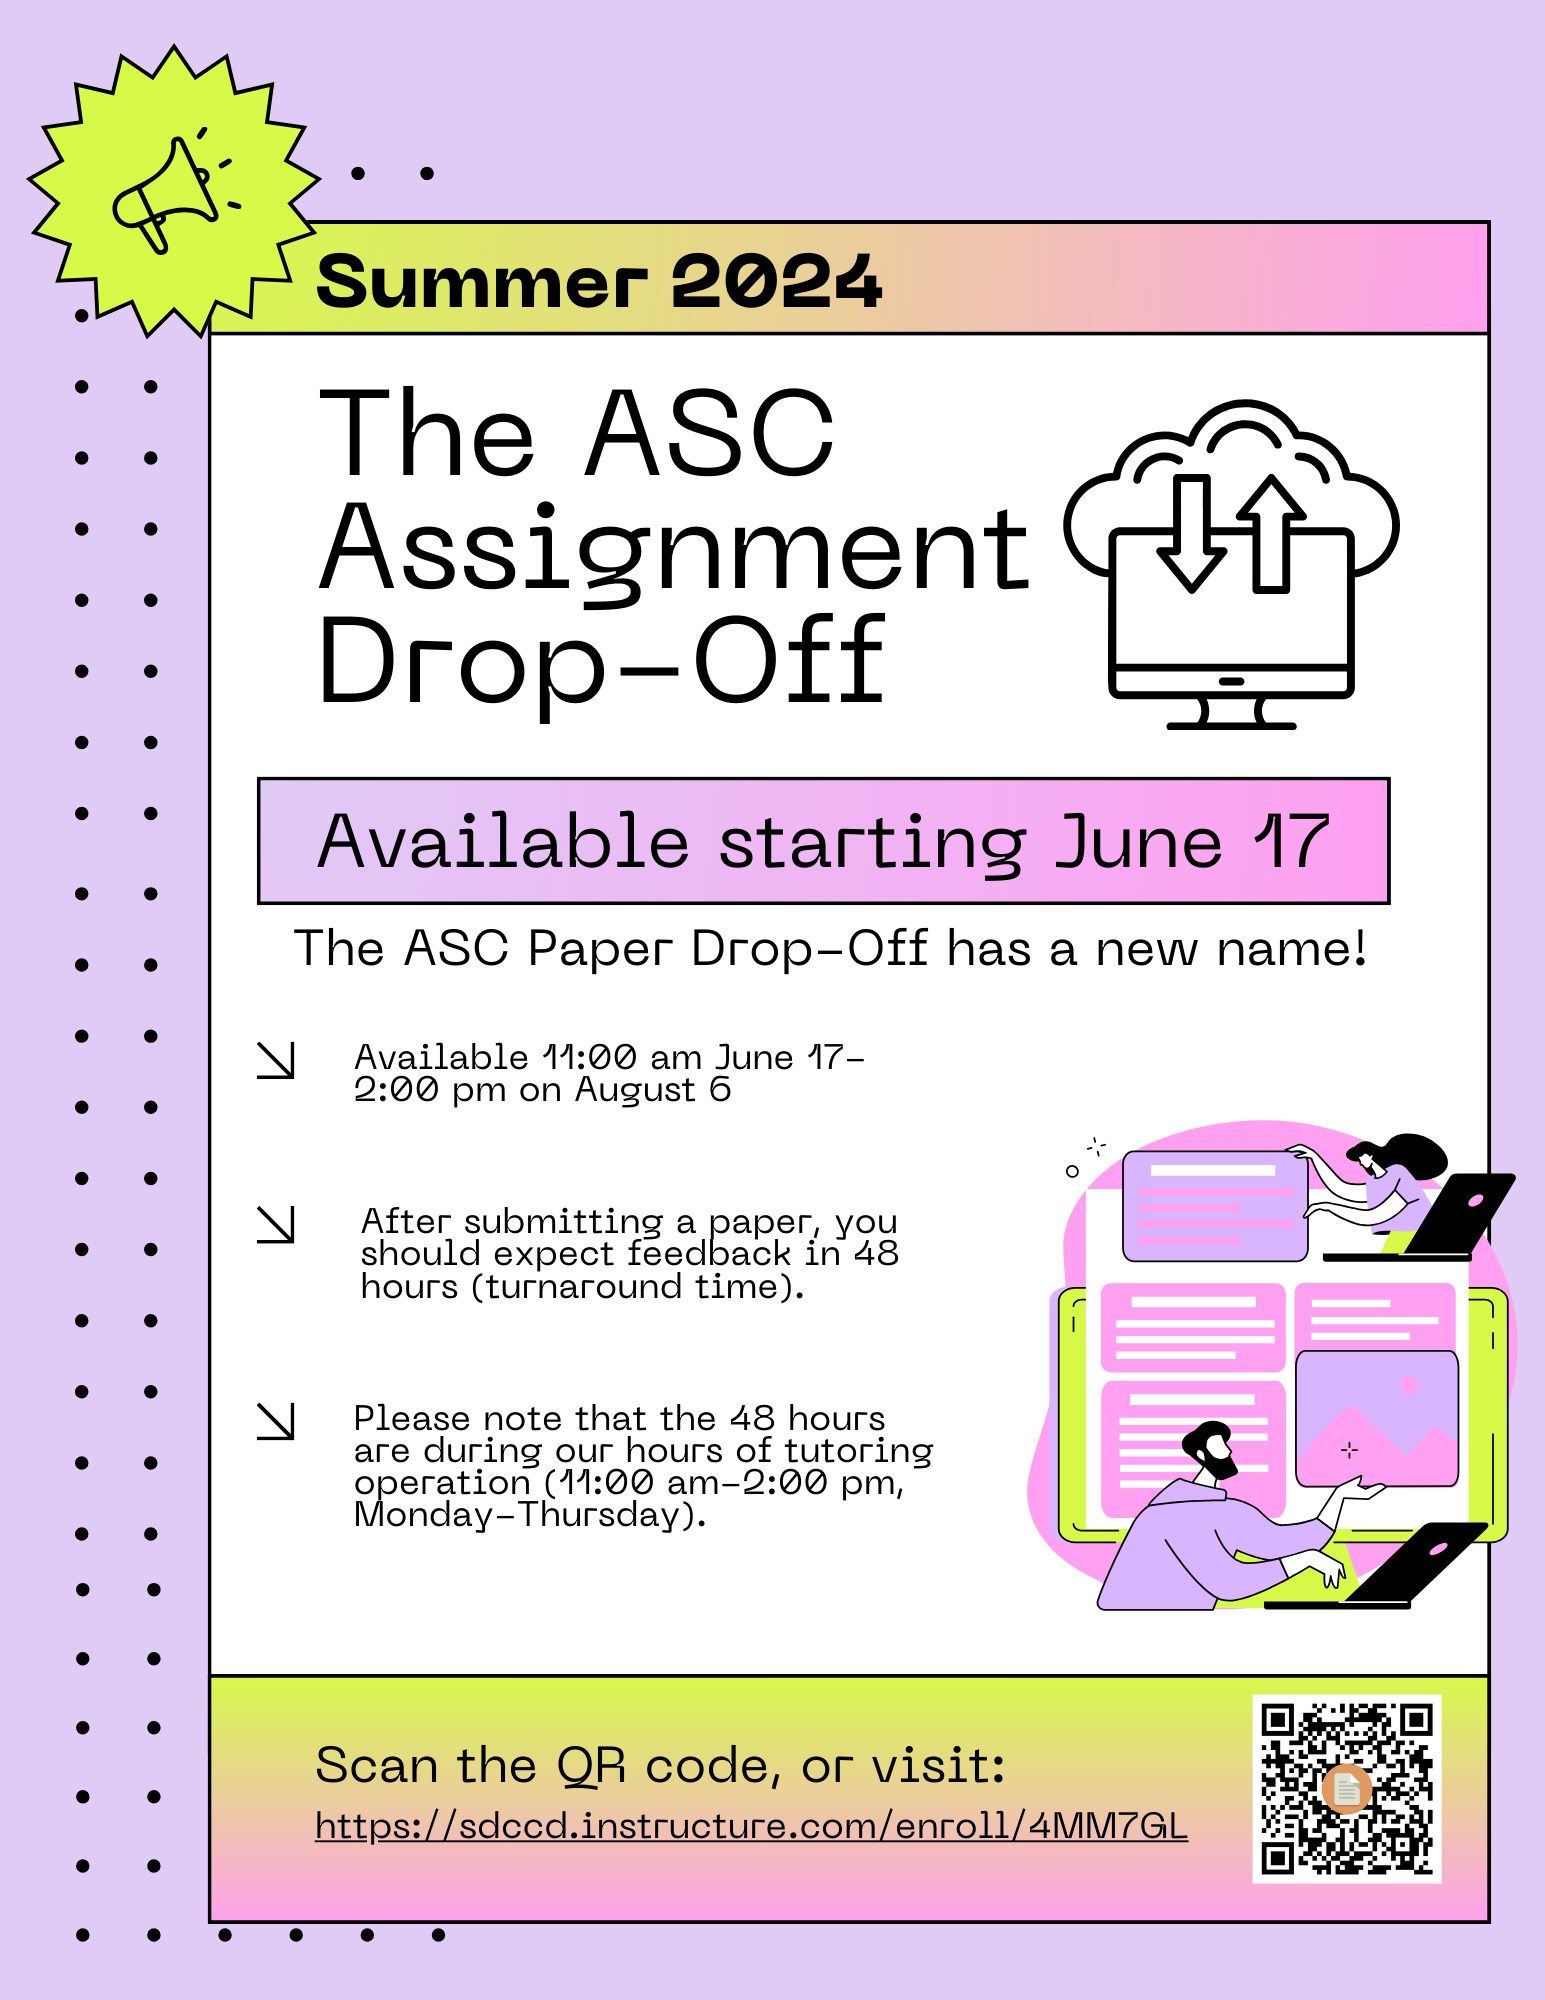 Summer 2024 Assignment Drop-Off